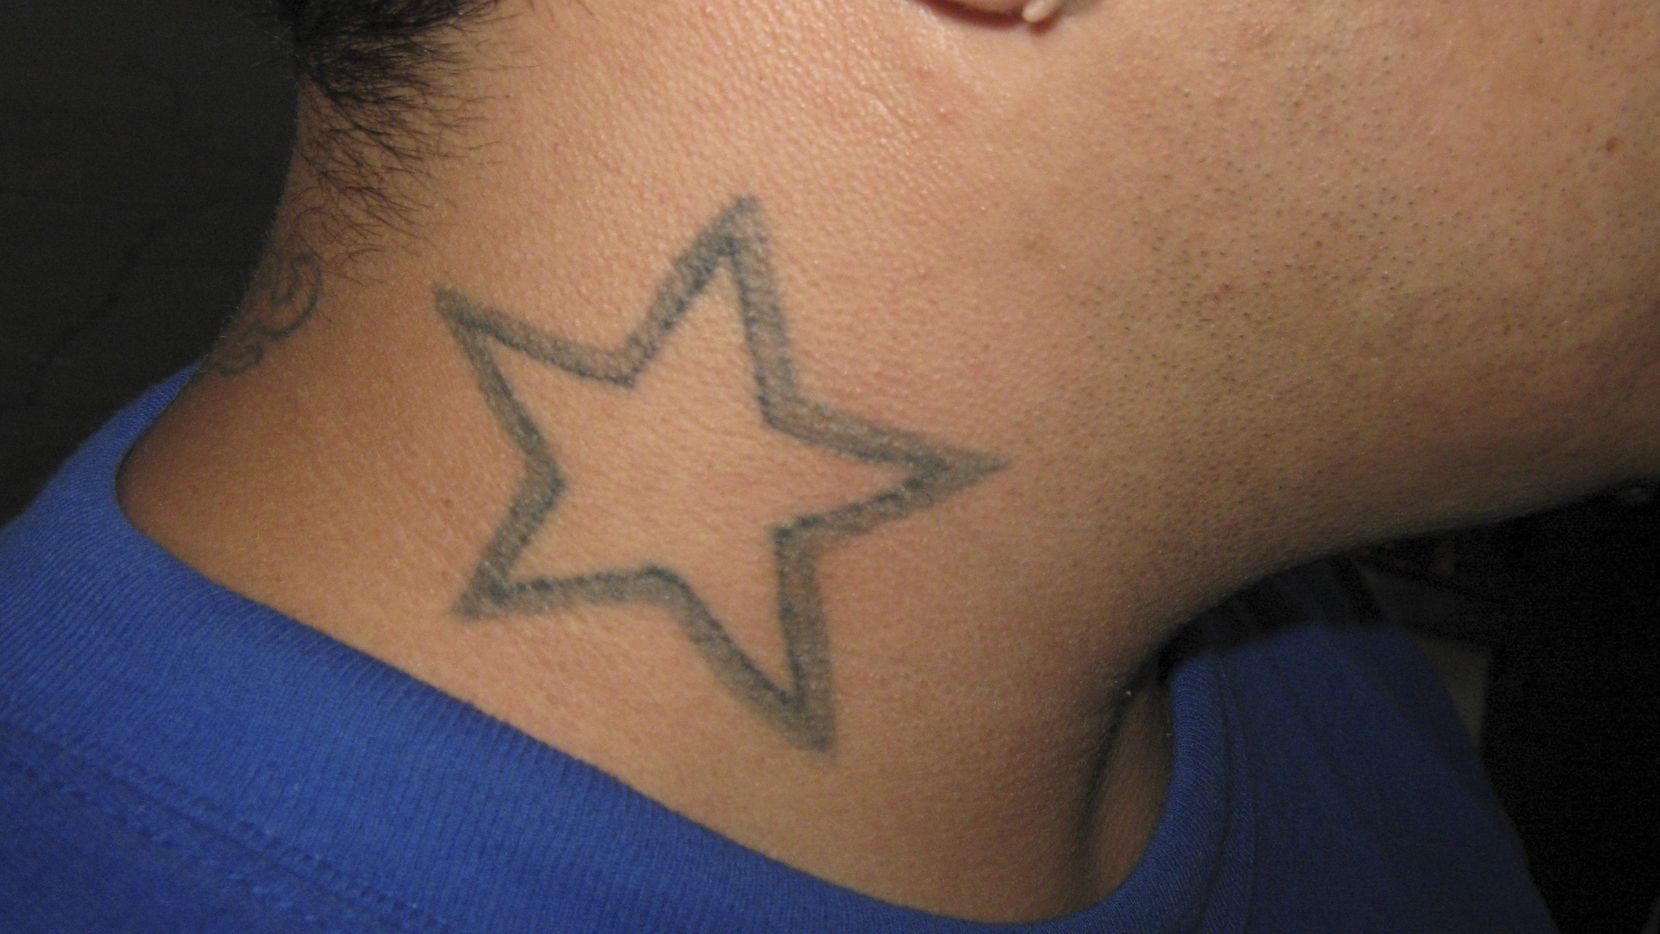 Star Tattoo Cop - Tango Blast's loose affiliation rules, tattoo look draw ex ...